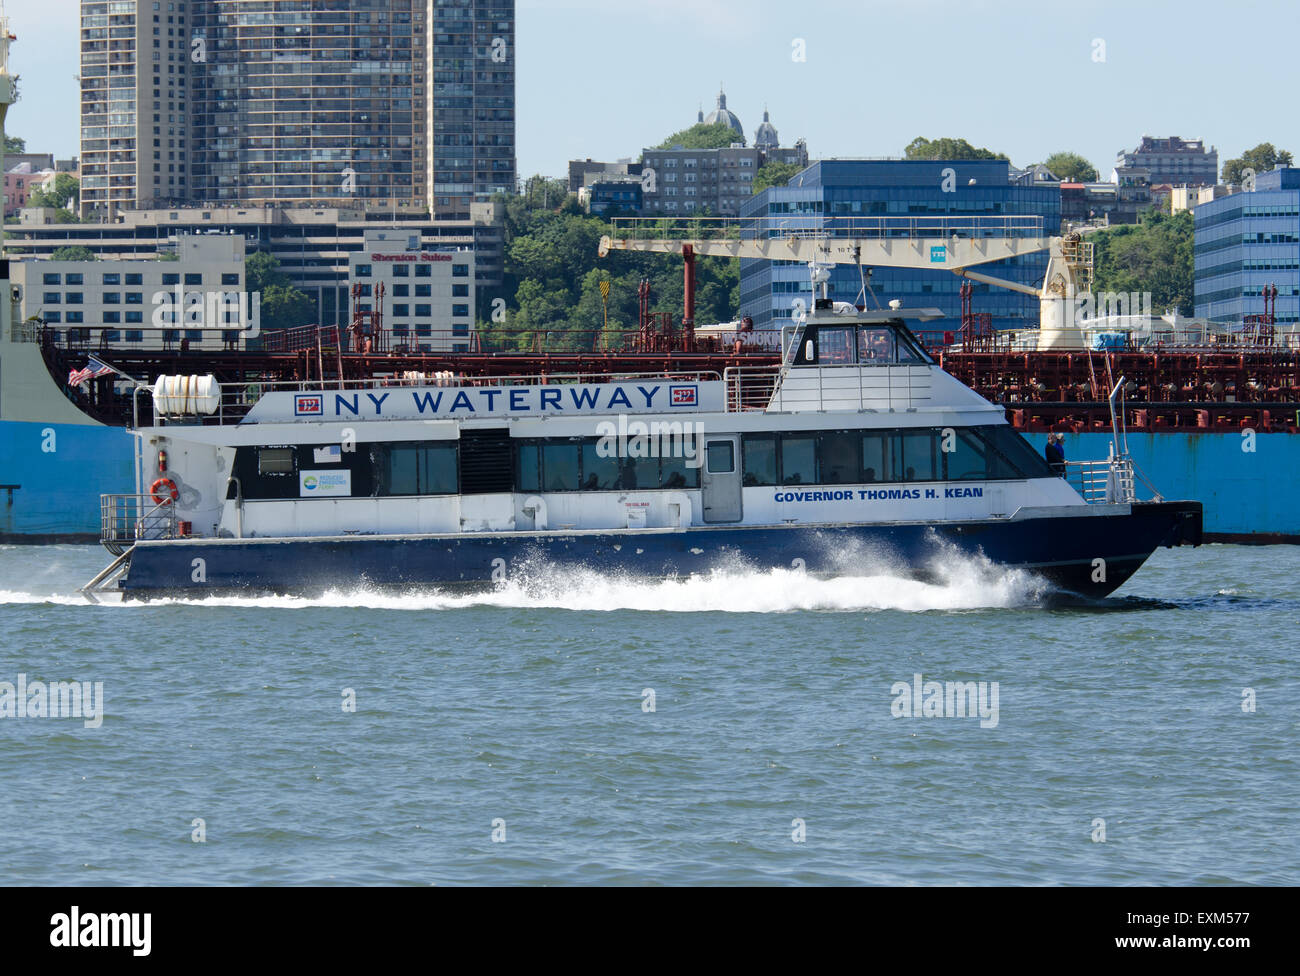 NY Waterway ferry "Gobernador Thomas H. Kean' de un catamarán de alta velocidad, de Haverstraw Ossining Ferry, el Río Hudson, en Nueva York, NY Foto de stock